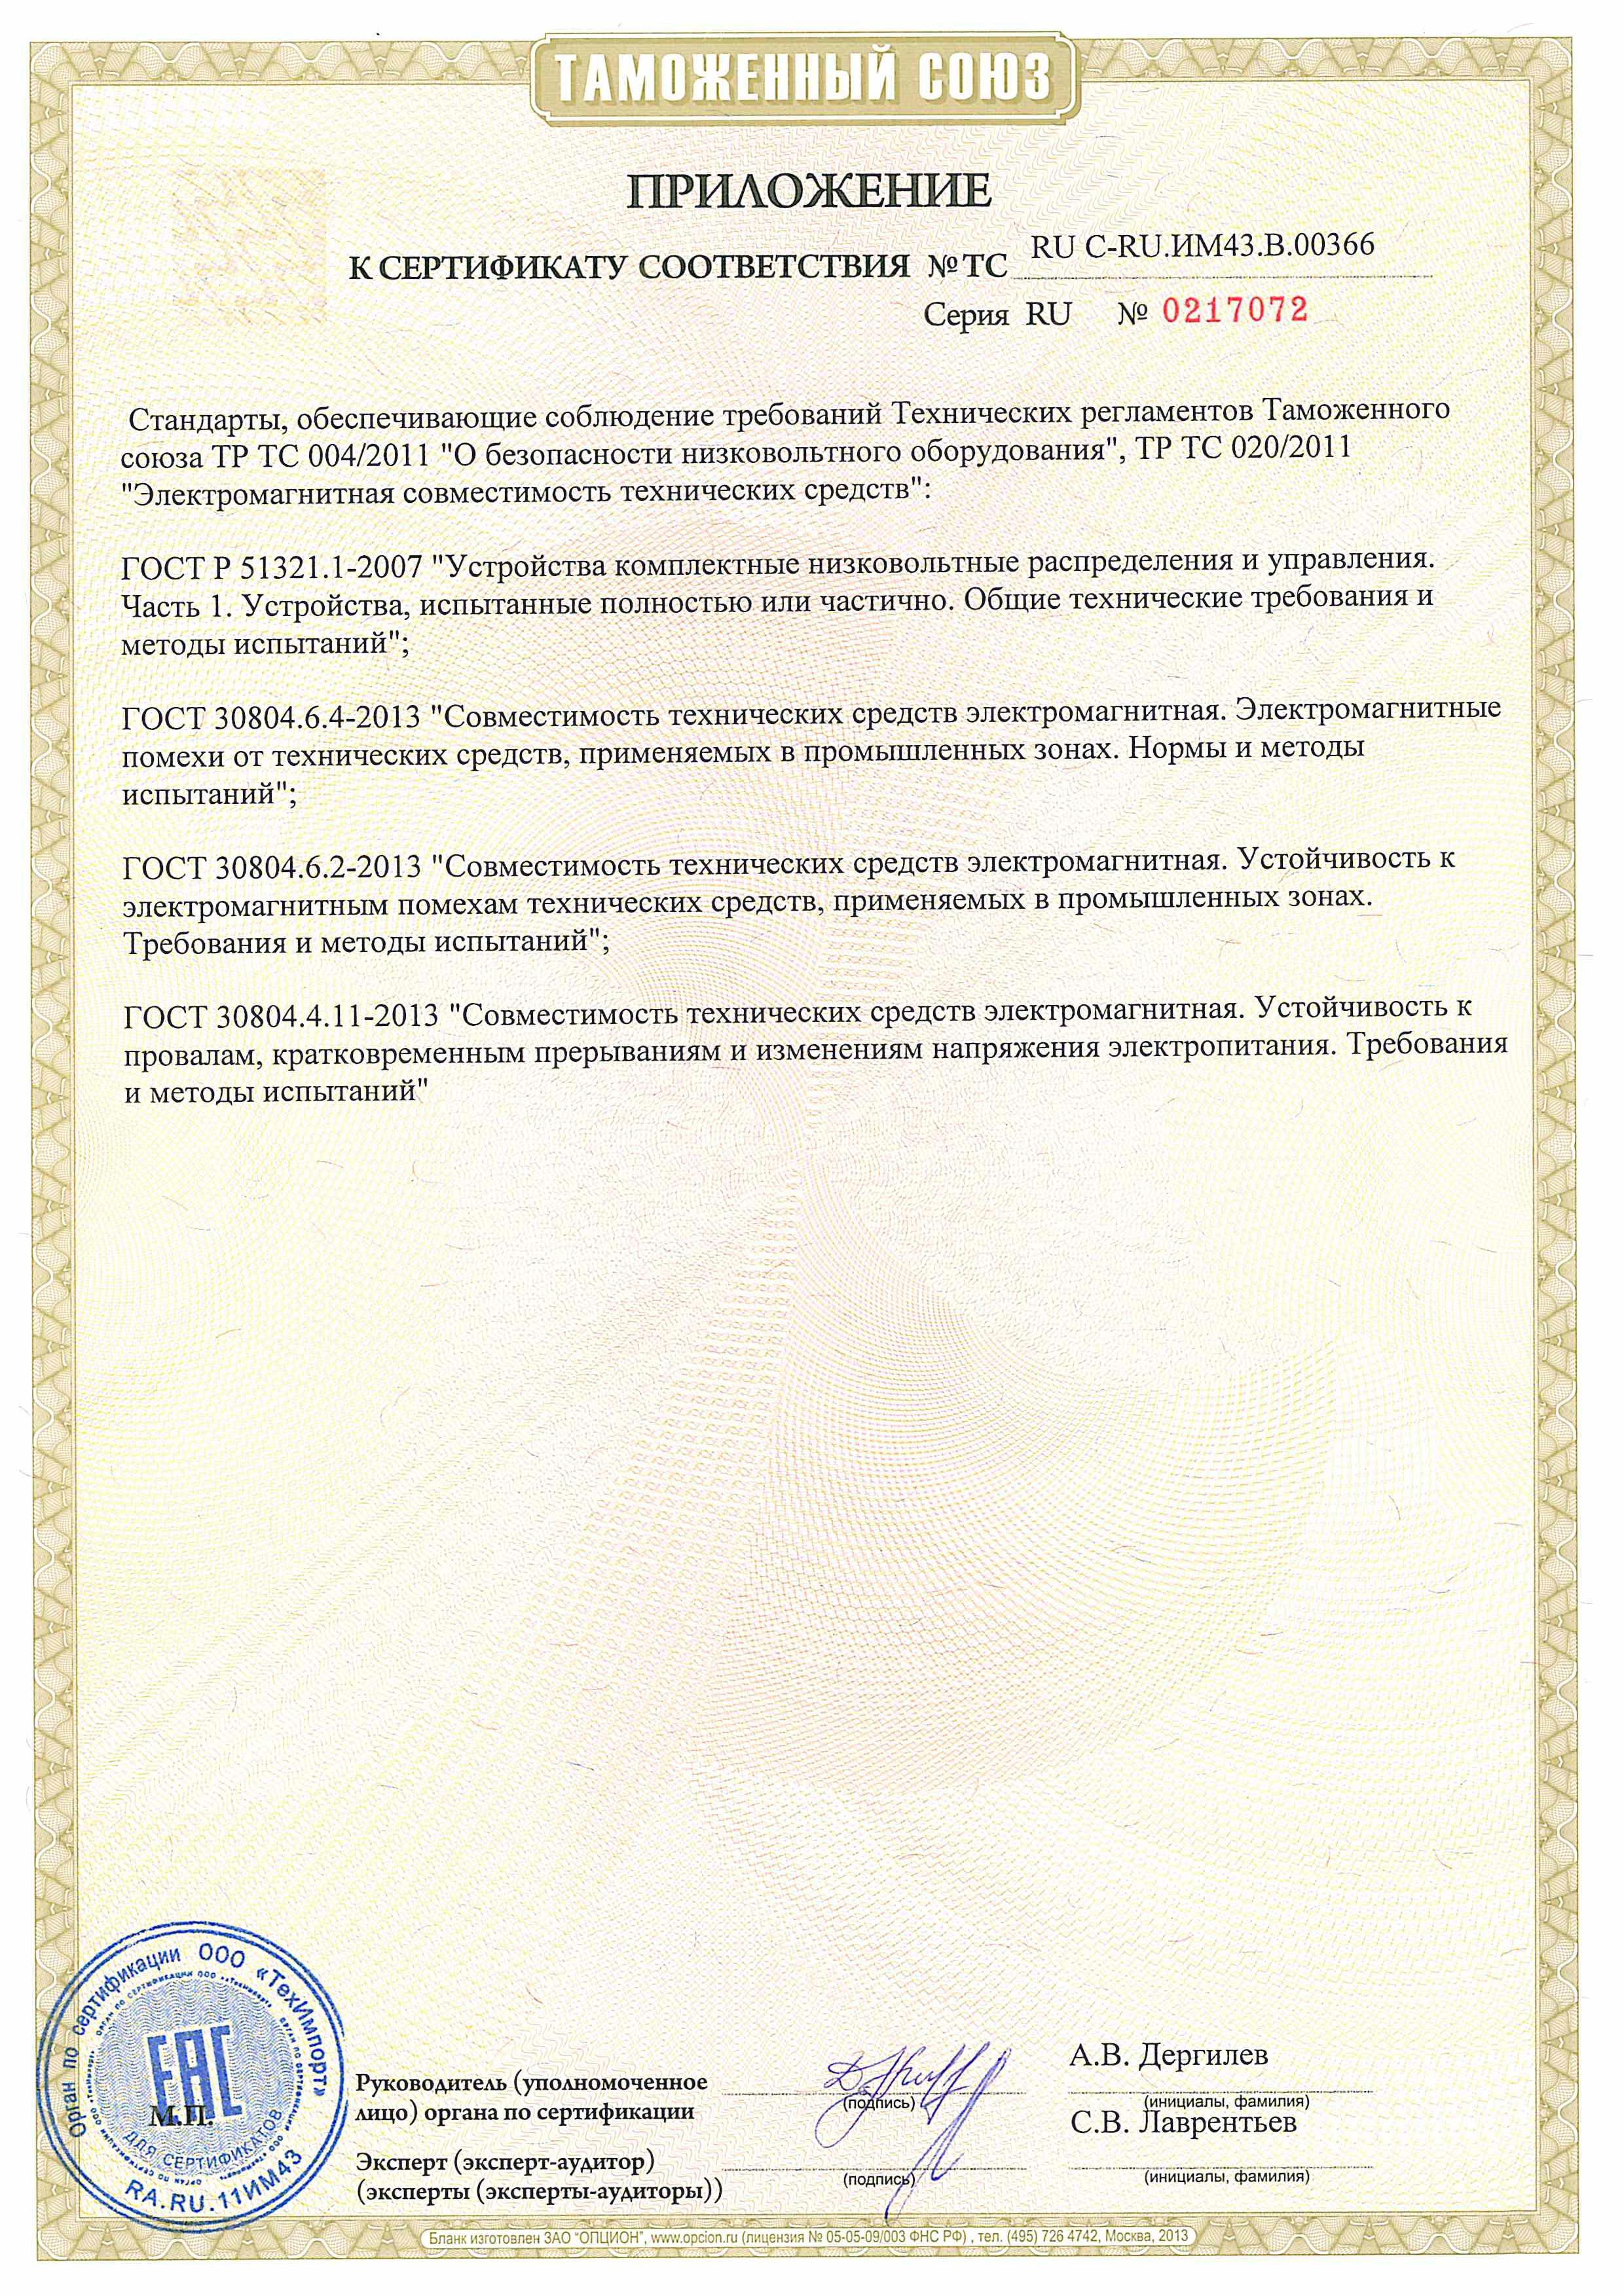 Сертификат соответствия Elex 24